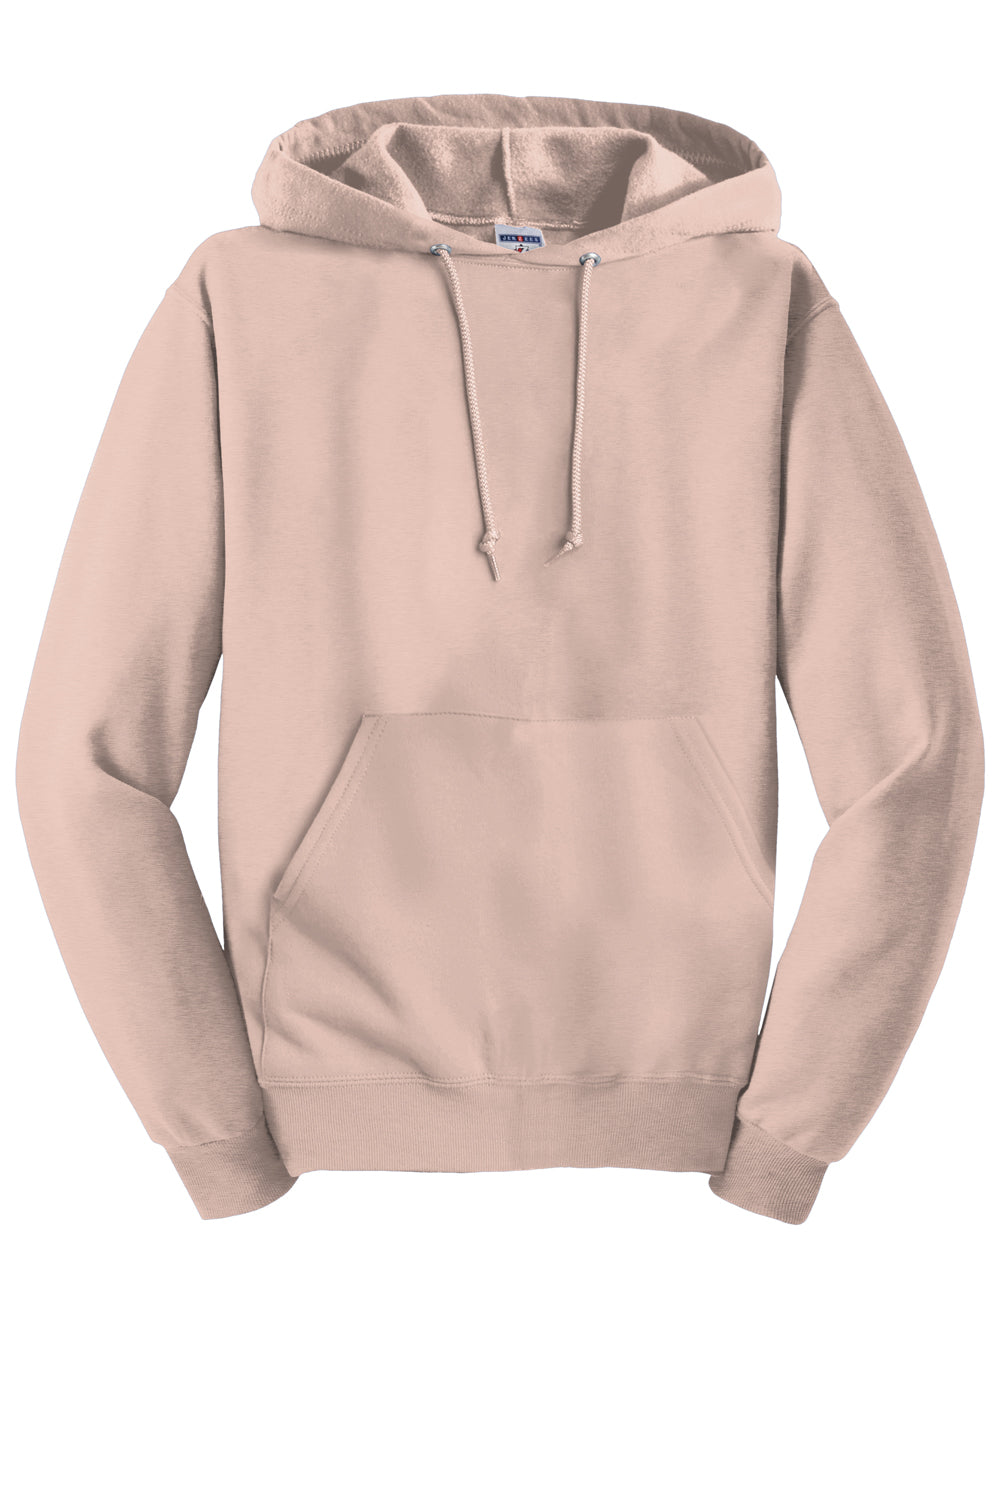 Jerzees 996M/996/996MR Mens NuBlend Fleece Hooded Sweatshirt Hoodie Blush Pink Flat Front